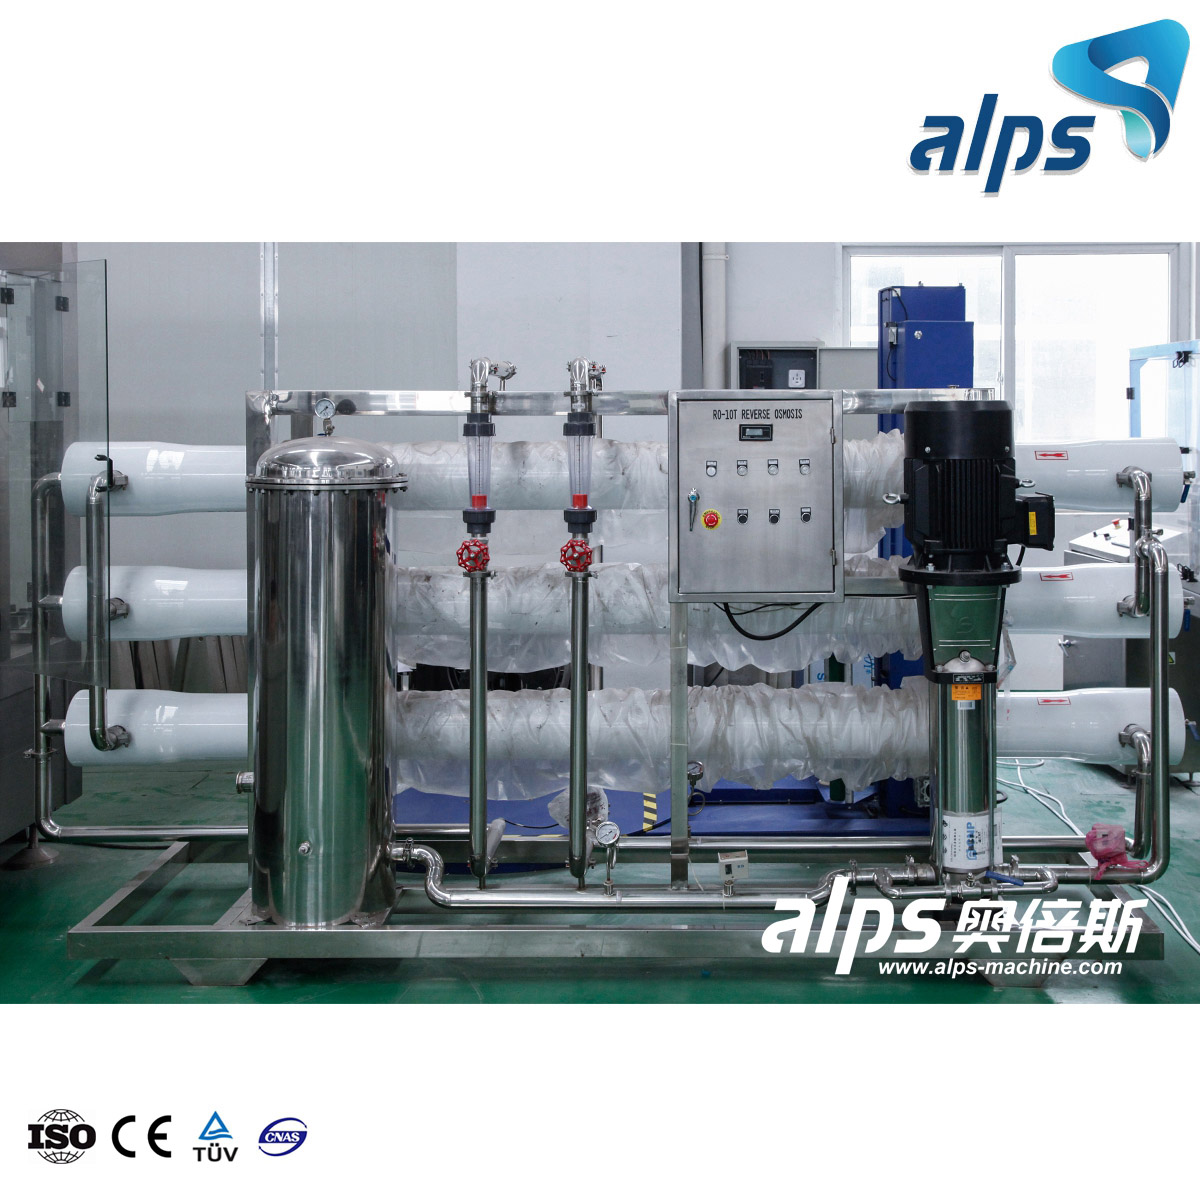 Impianto automatico di trattamento delle acque RO ad osmosi inversa per acqua potabile minerale